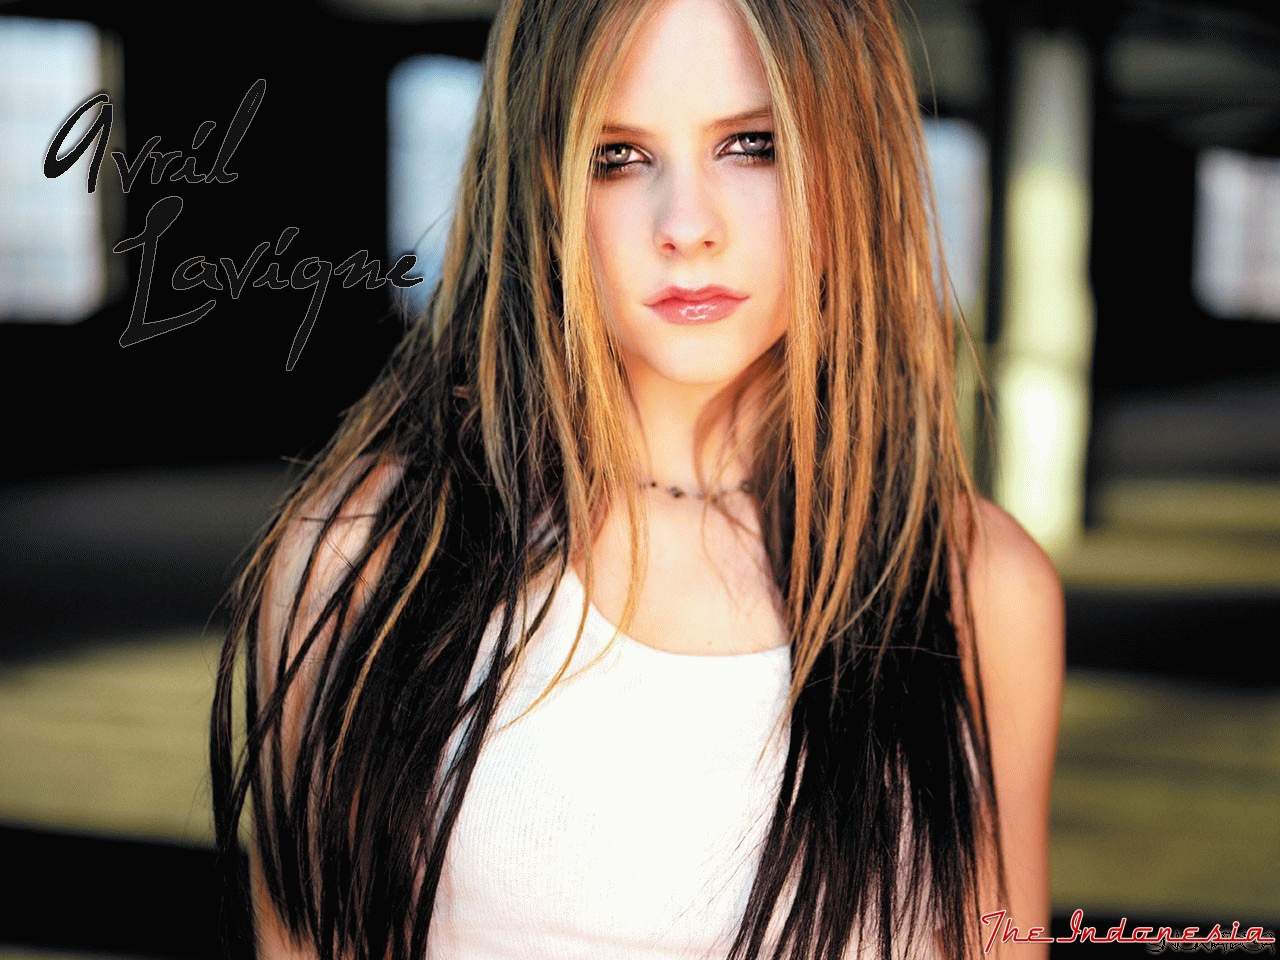 Social Wallpaper: Wallpaper Avril Lavigne